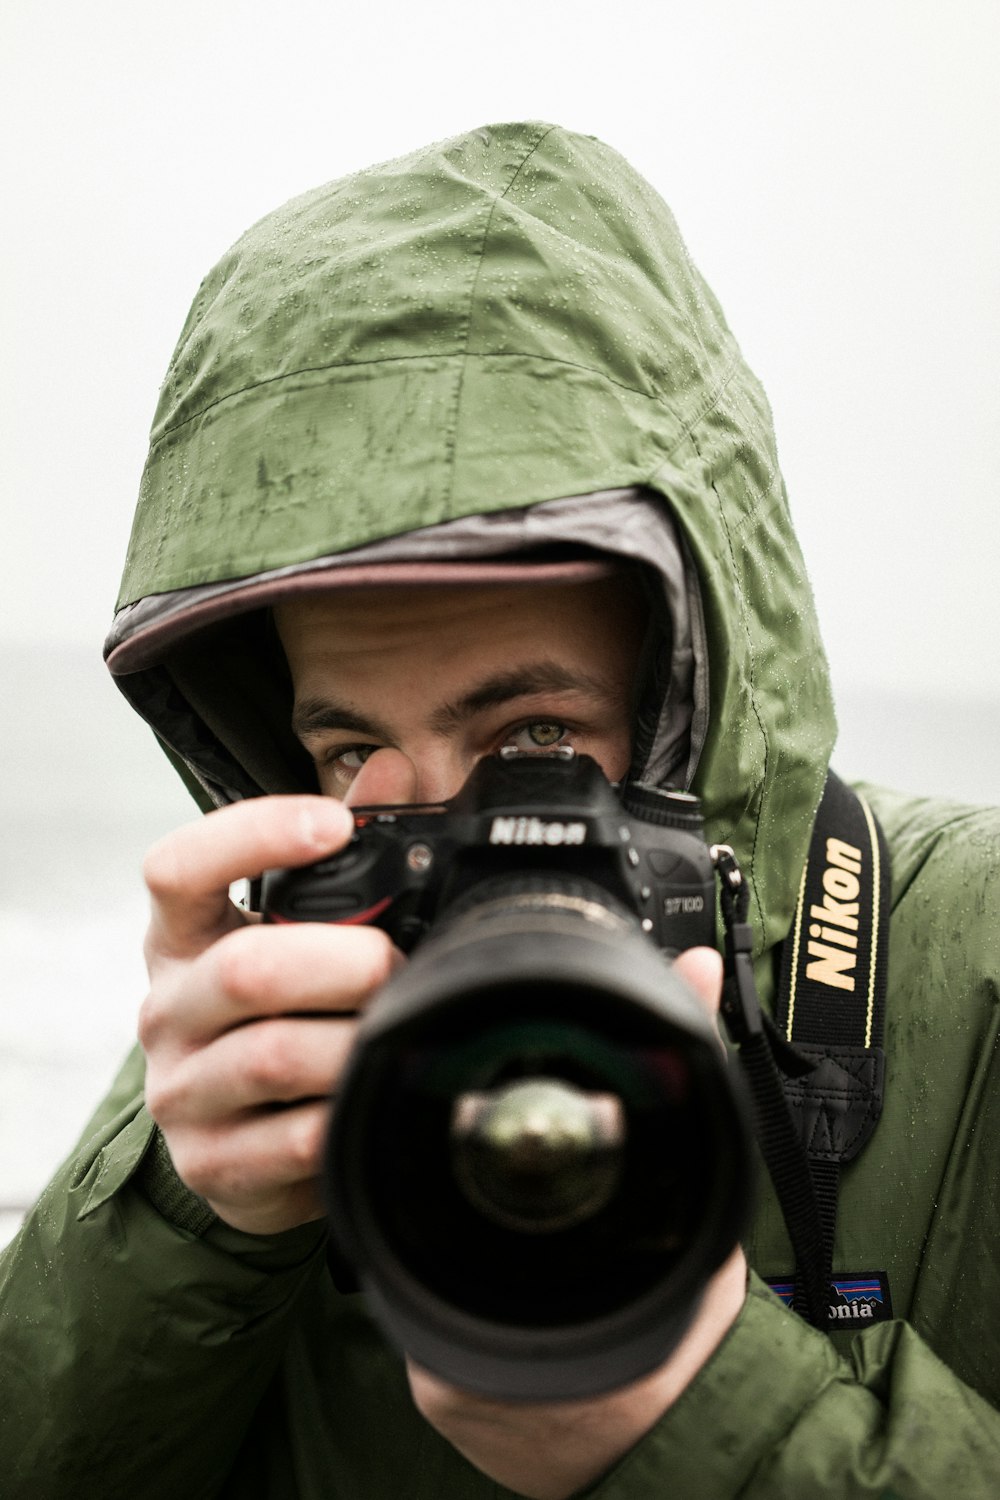 Mann mit Nikon DSLR-Kamera